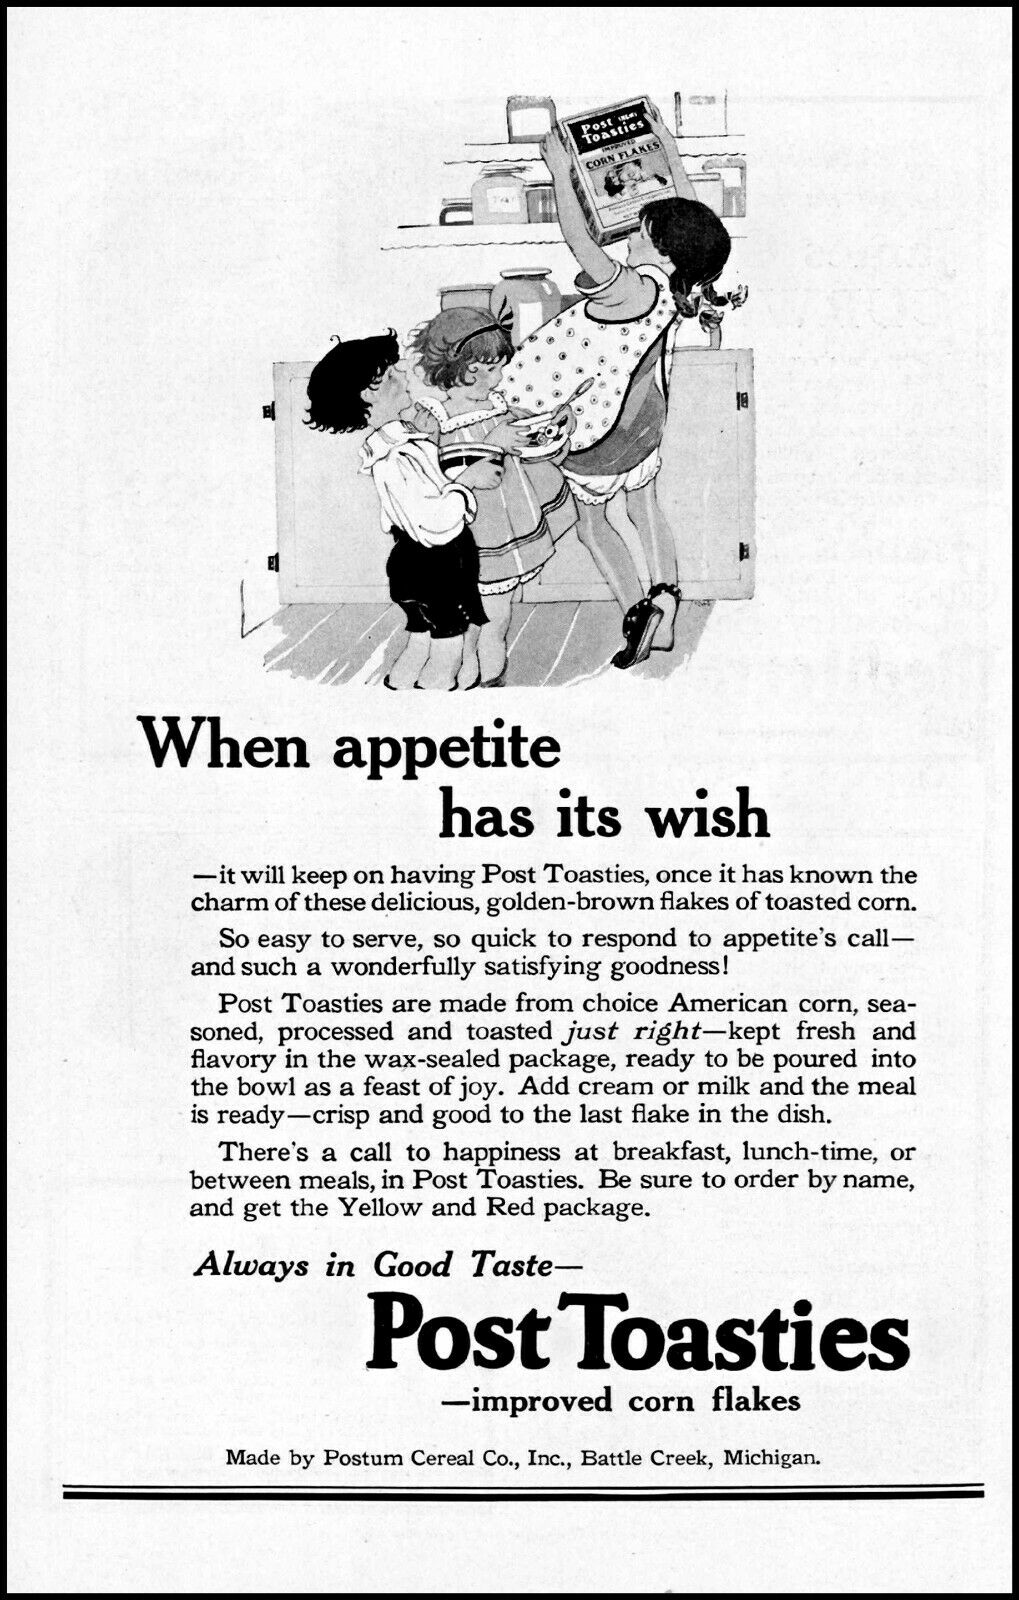 1922 Kids Breakfast Post Toasties Cereal Battle Creek Vintage Art Print Ad Ads59